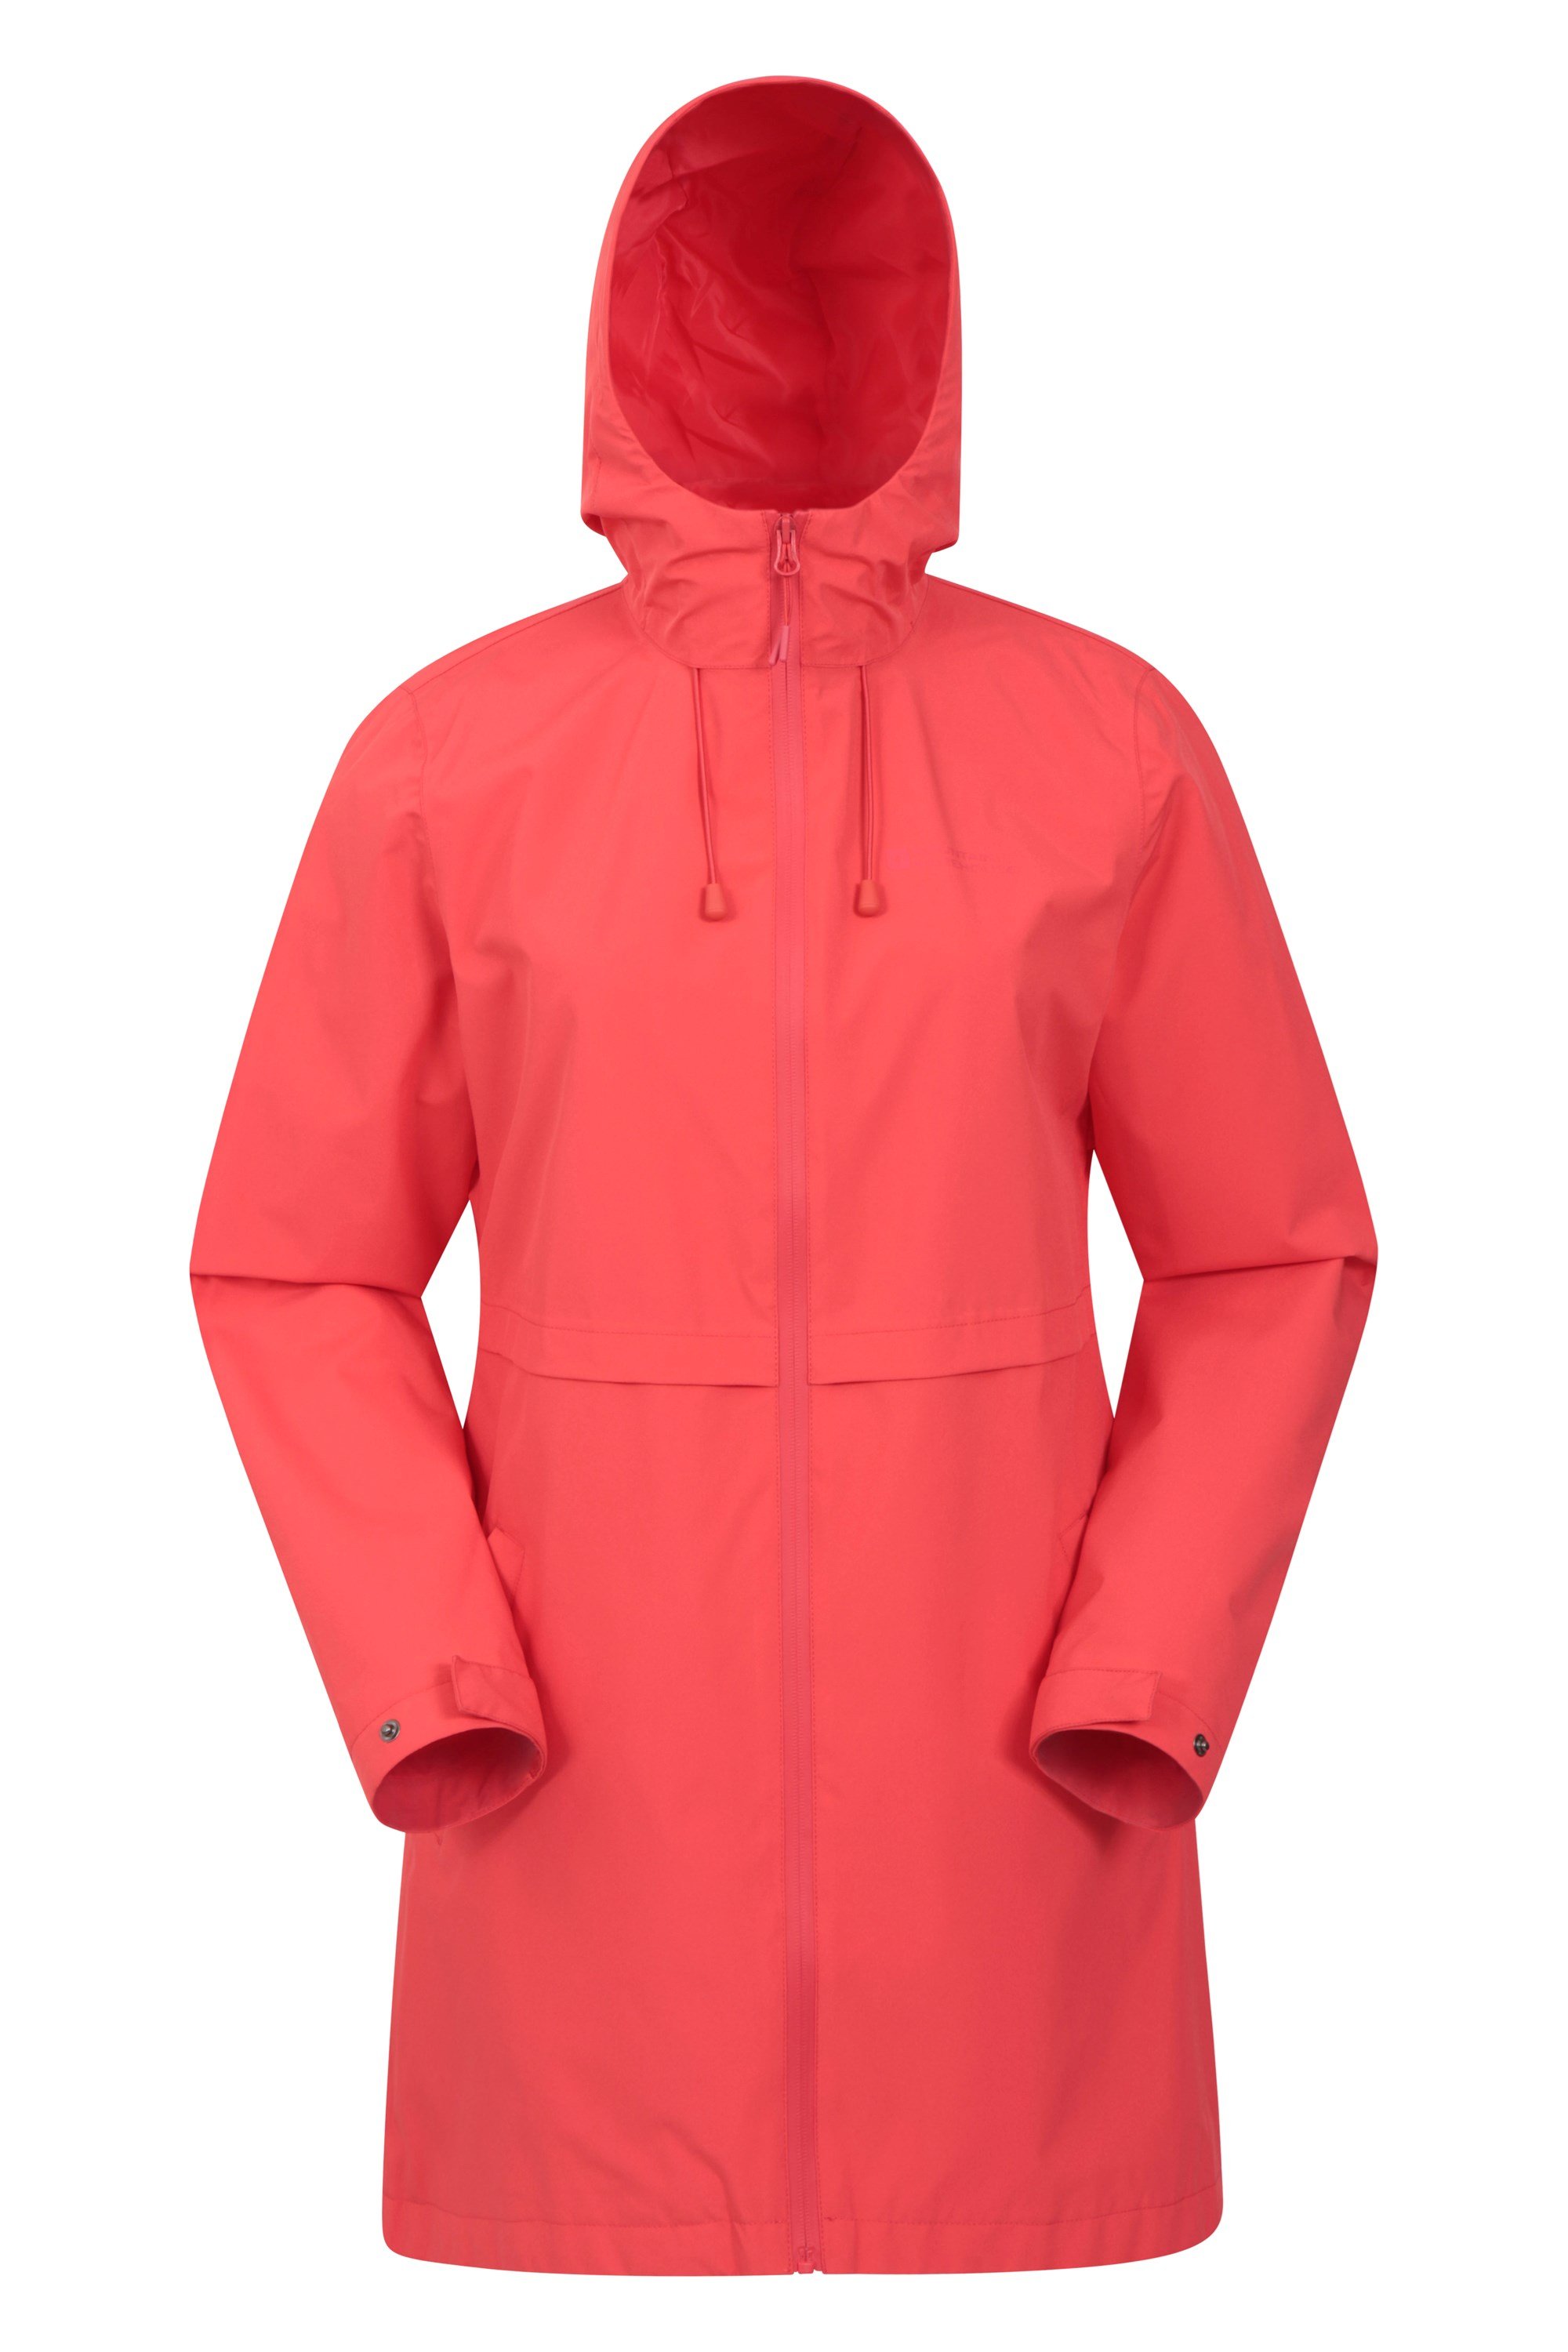 Mountain Warehouse Hilltop Womens Waterproof Jacket 